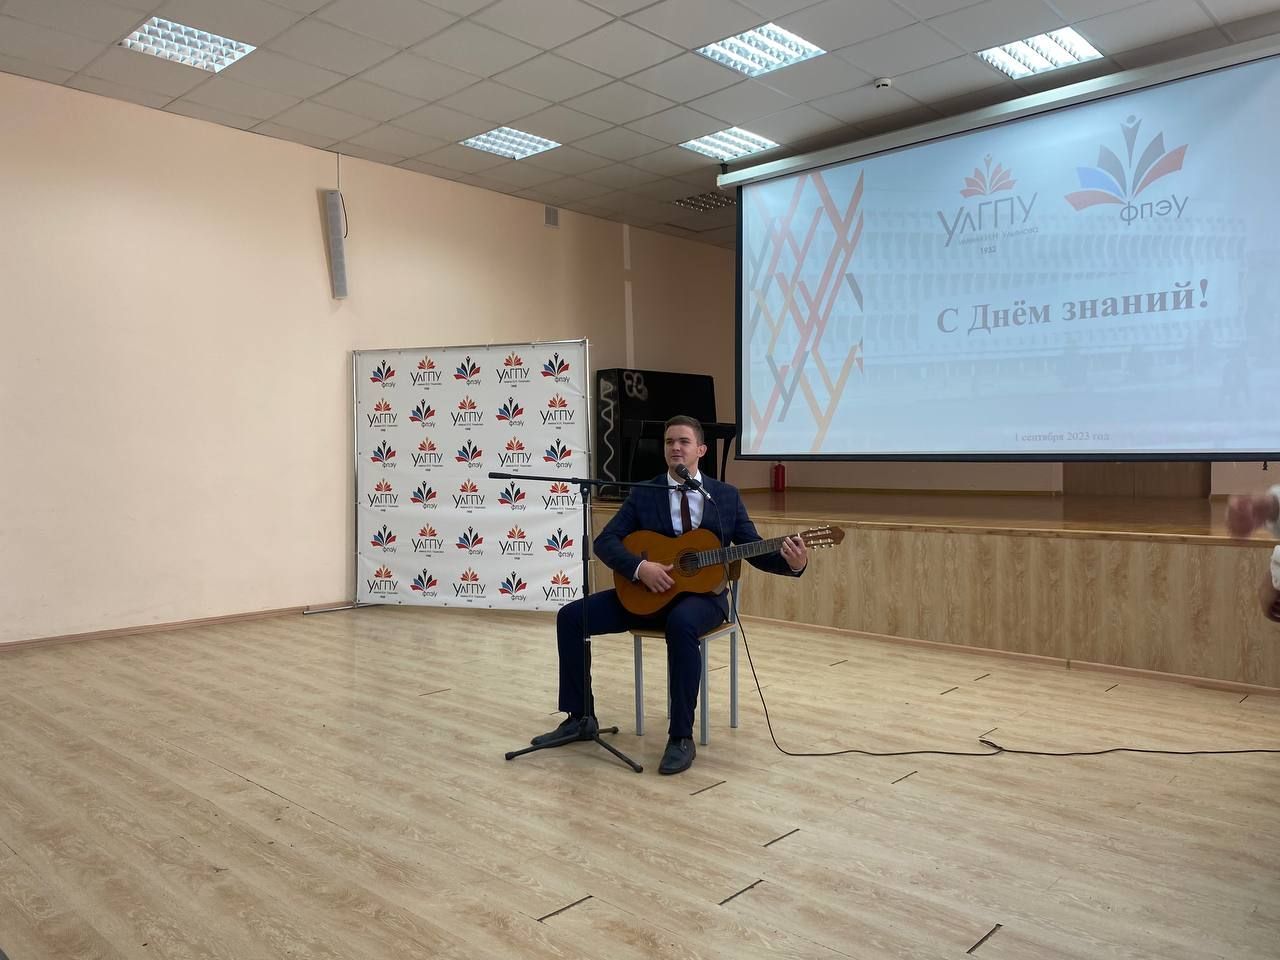 Председатель молодёжного крыла Ульяновского реготделения Ассоциации юристов России вручил первые студенческие билеты